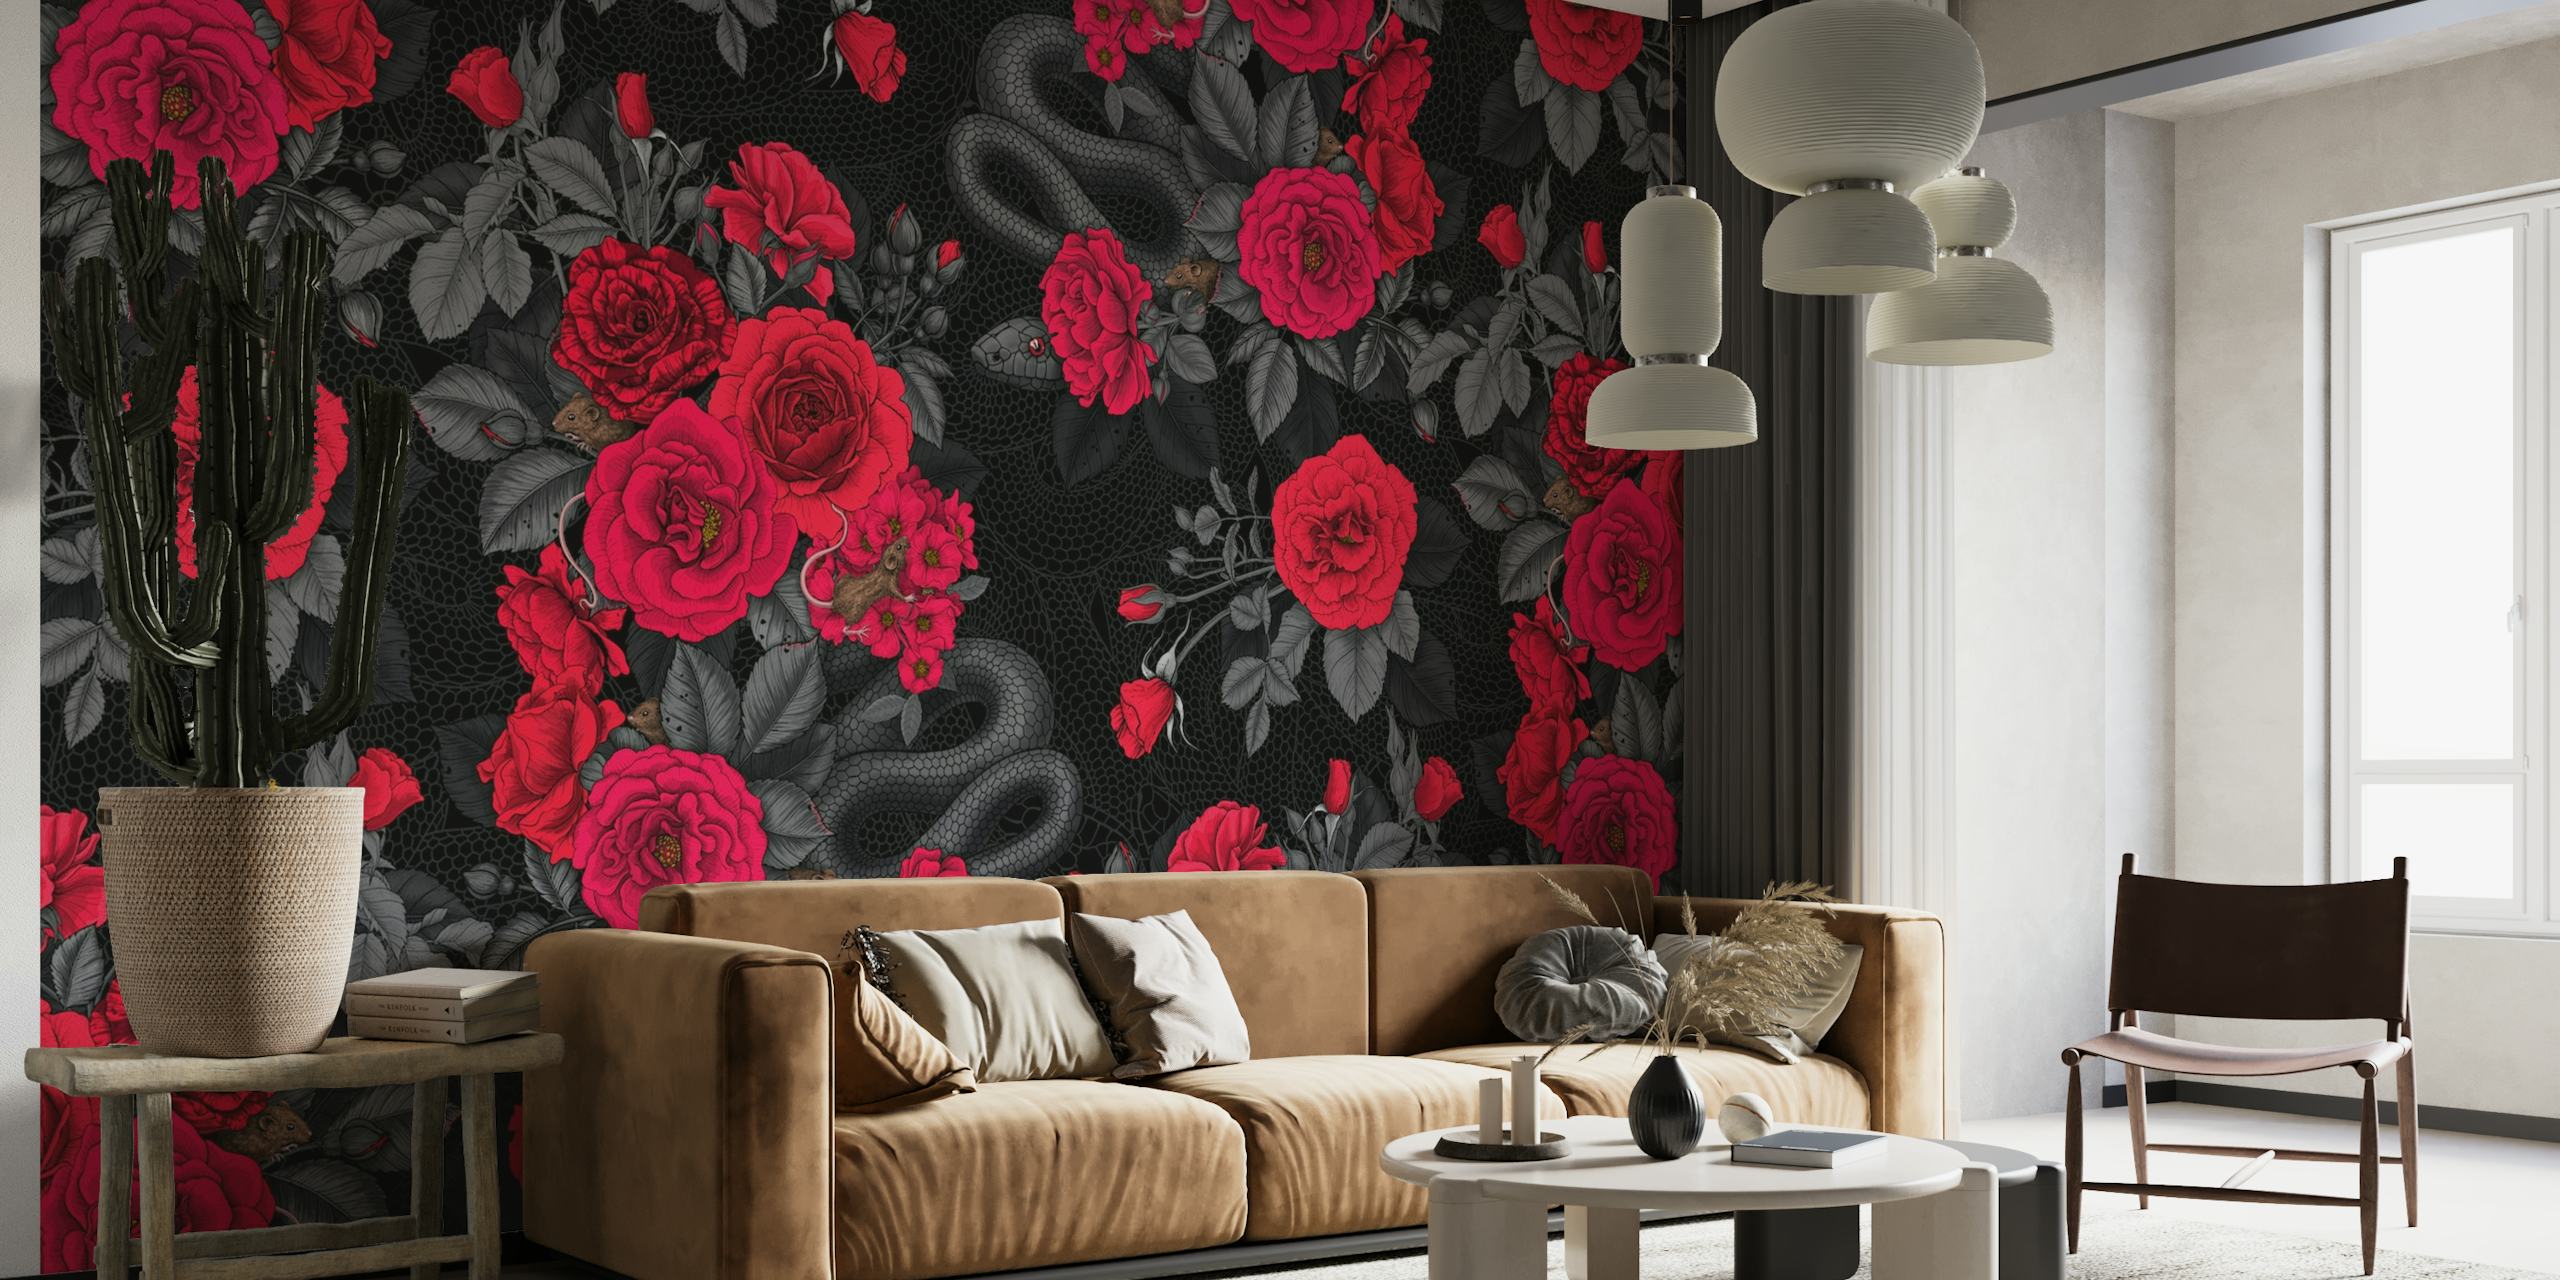 Hidden in the roses 2 wallpaper